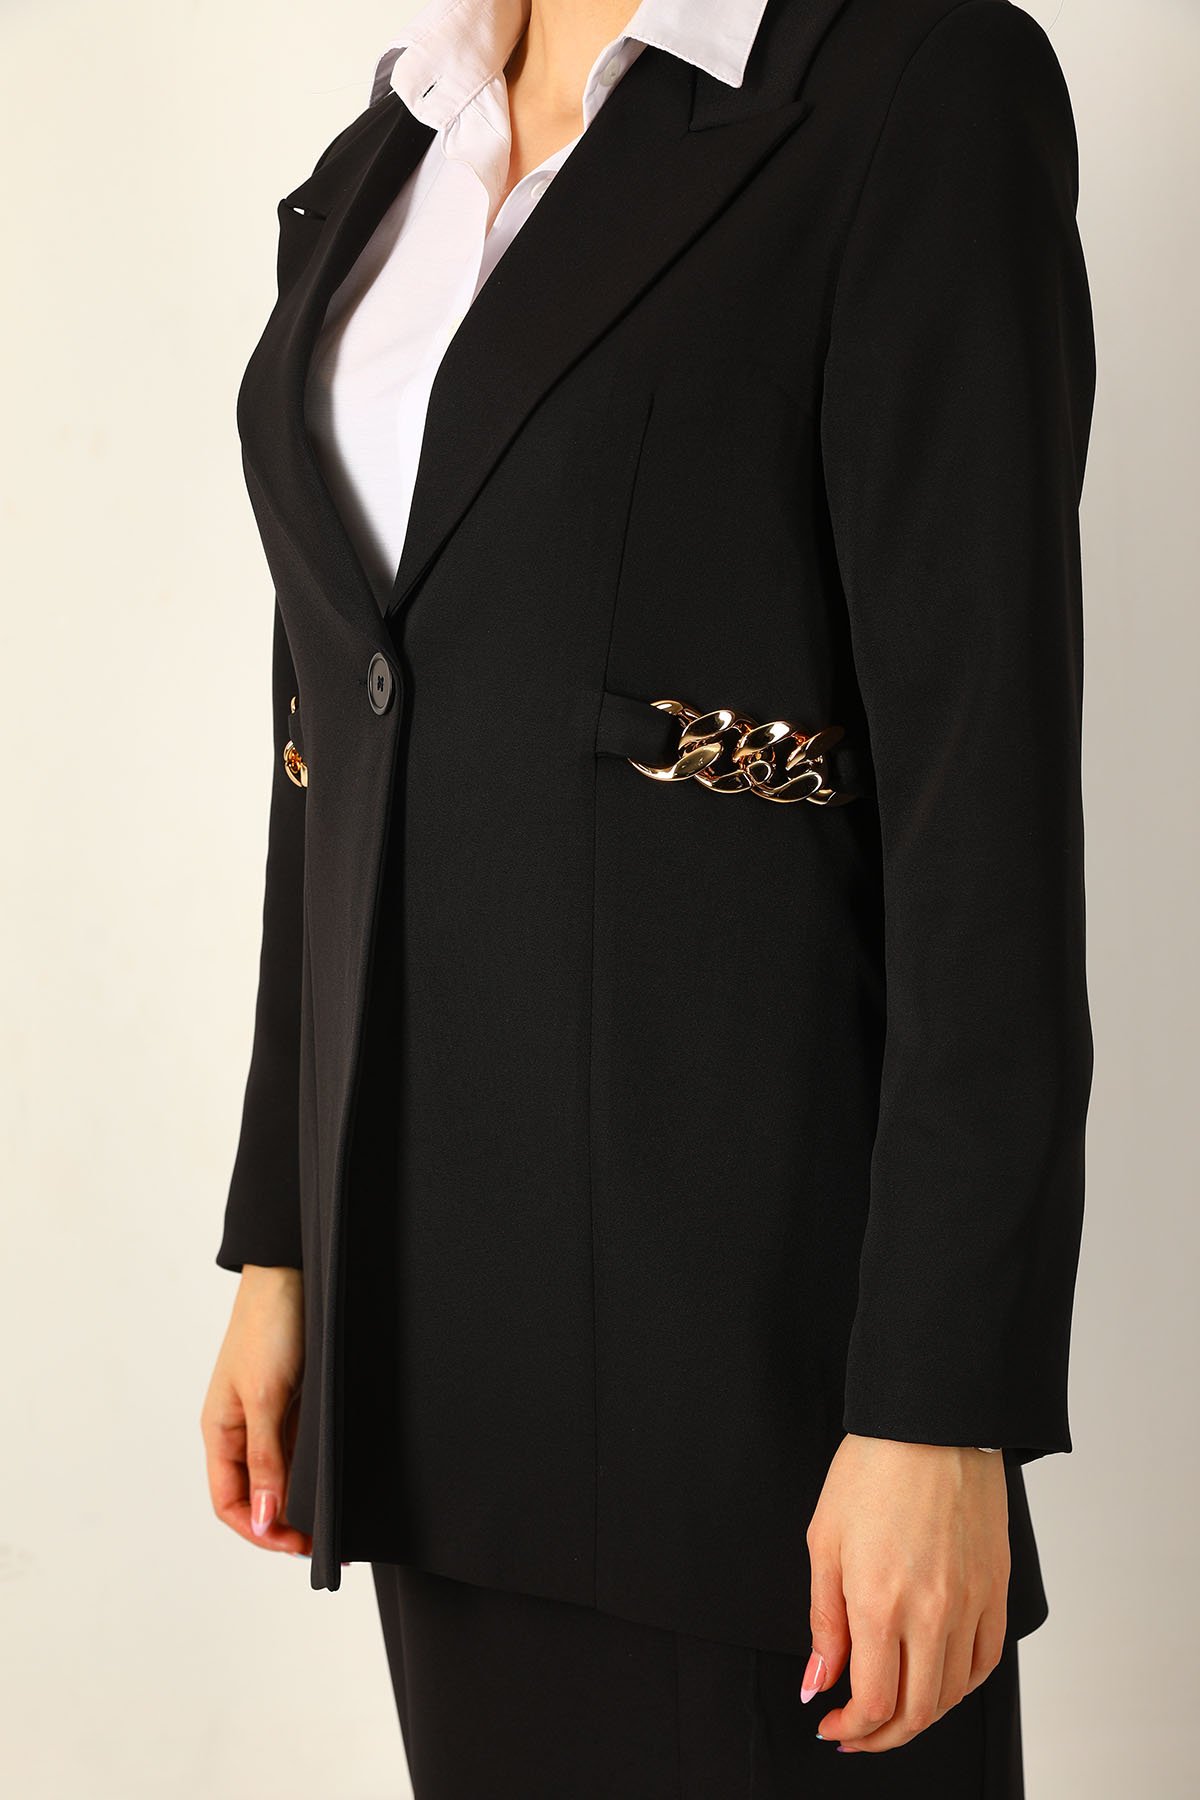 Kadın Zincir Detaylı Astarlı Uzun Blazer Ceket Siyah 499090 - tozlu.com